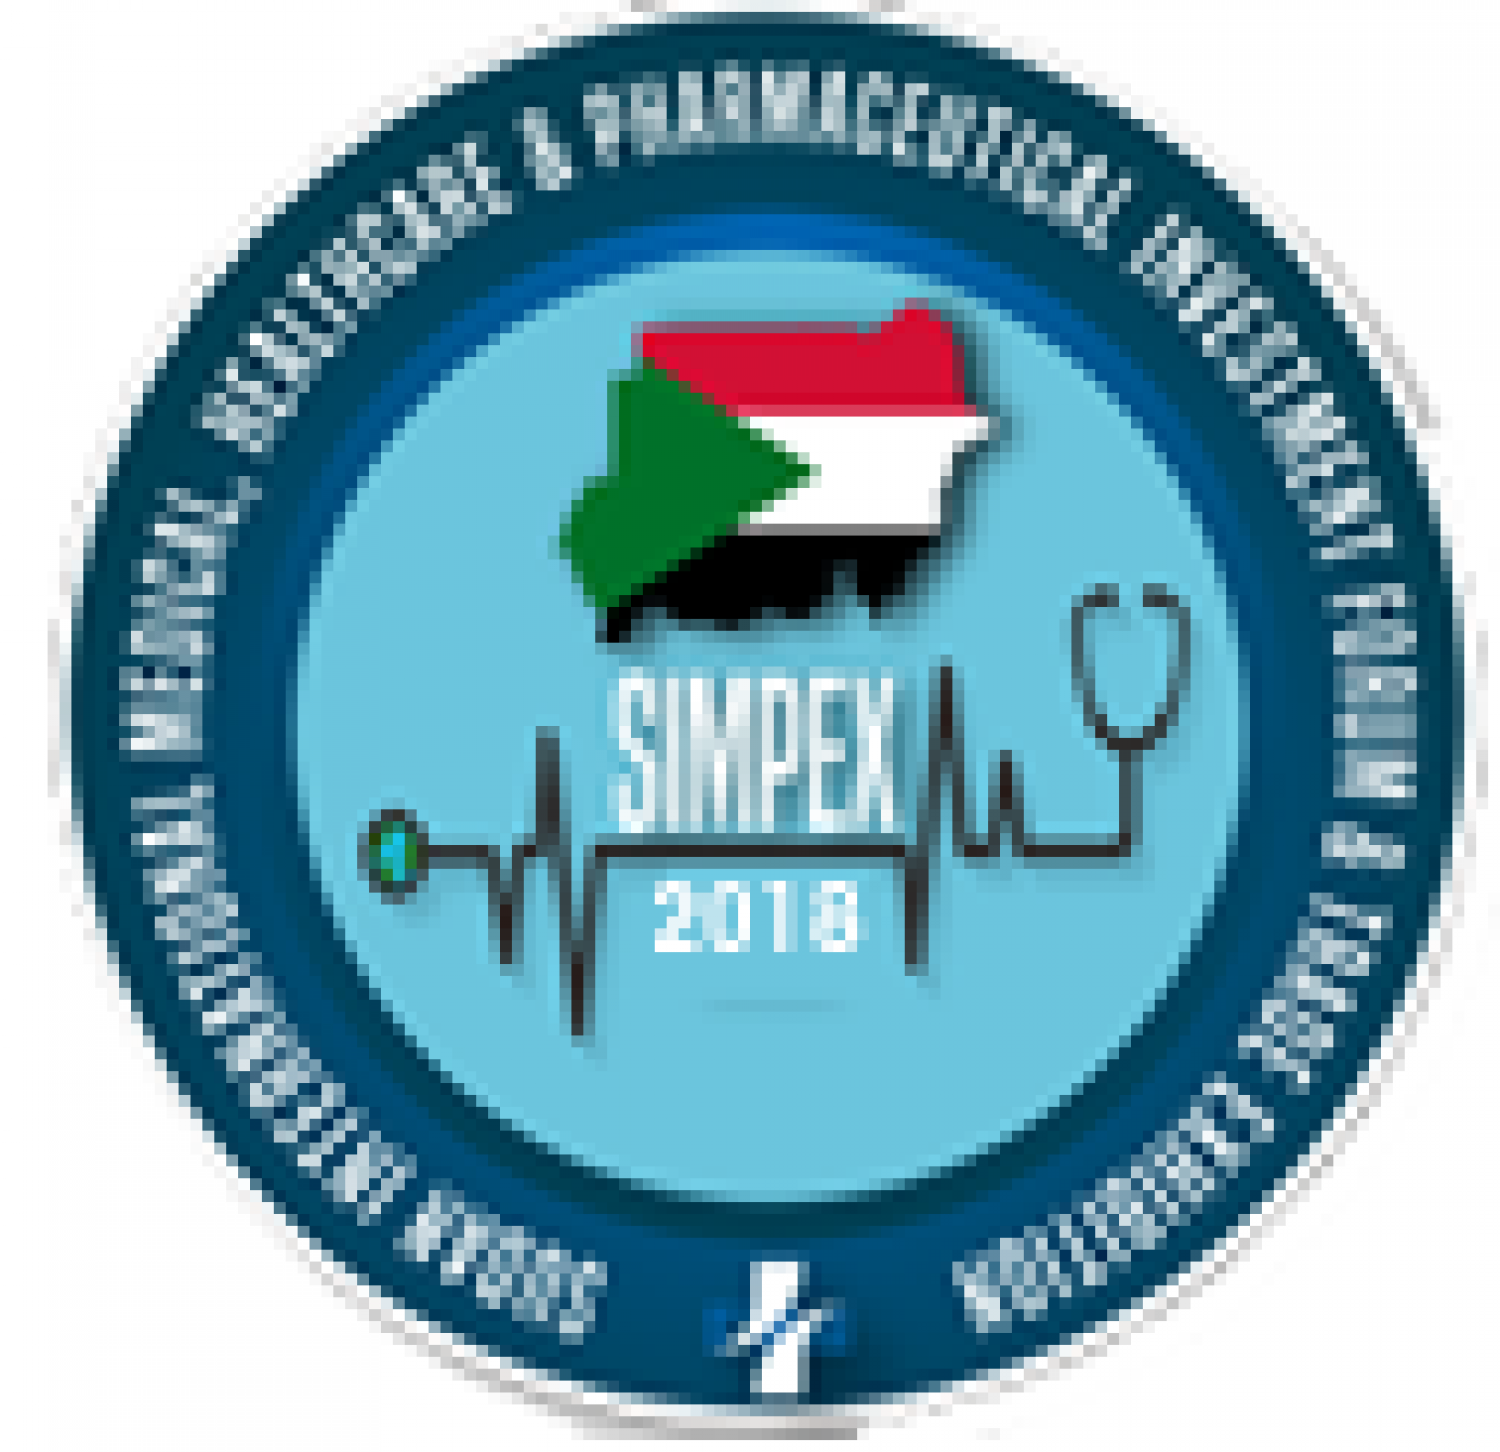 SIMPEX 2018 - SUDAN